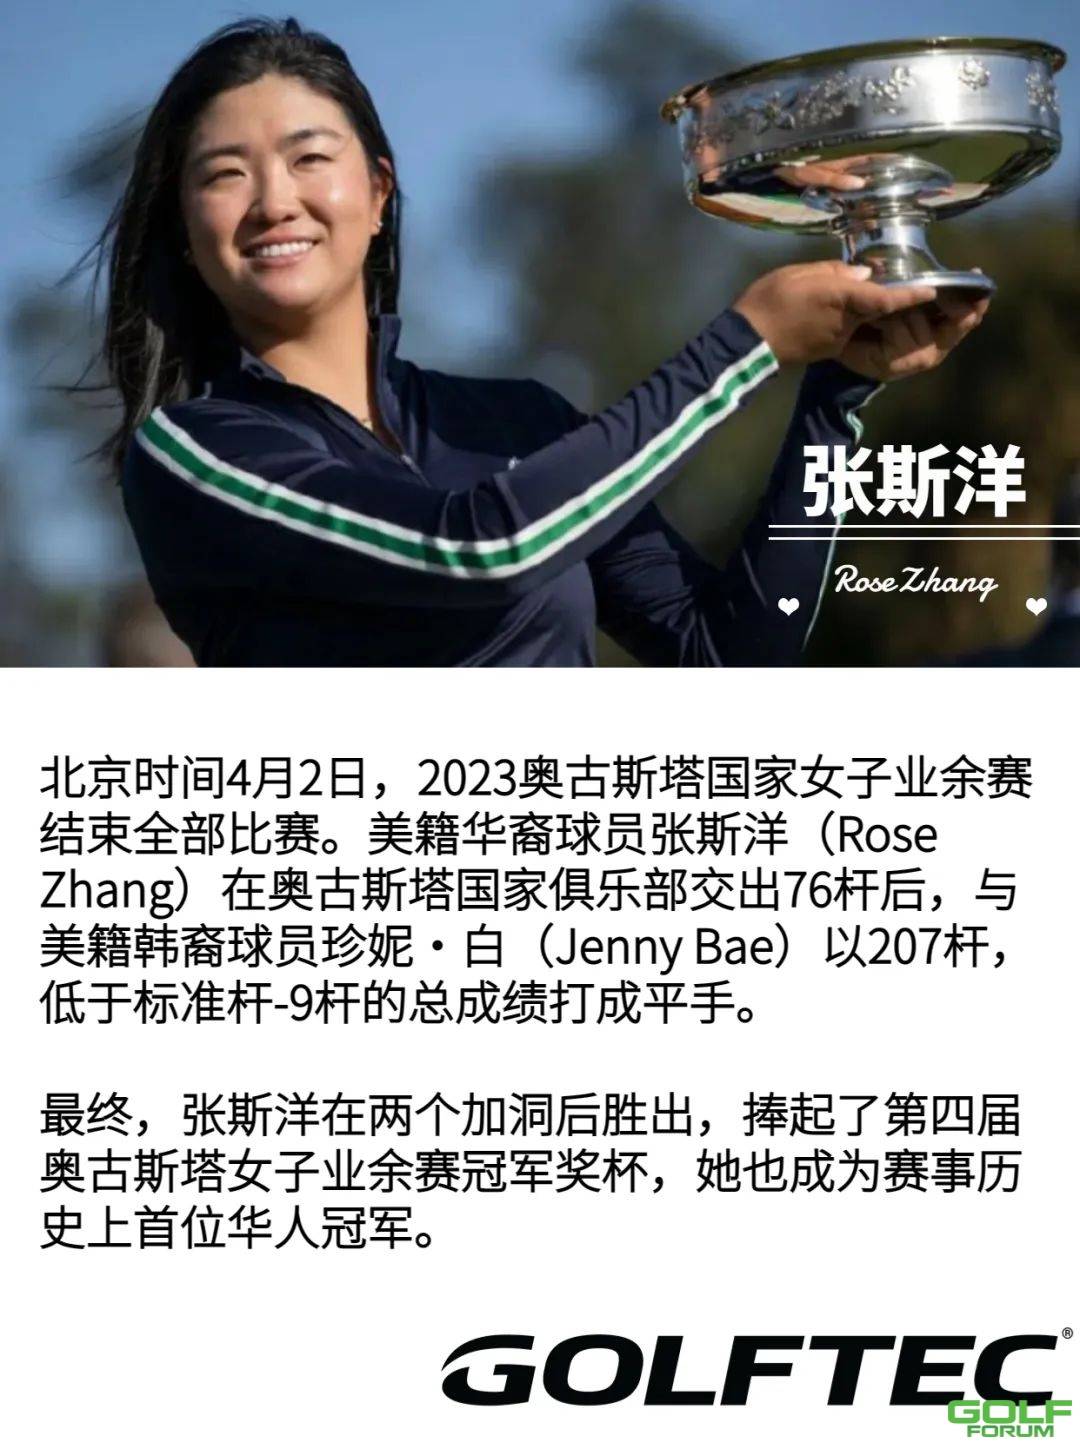 为什么当年张斯洋的父亲为她选择GOLFTEC?深圳青少年高尔夫培训，室内就一定 ...